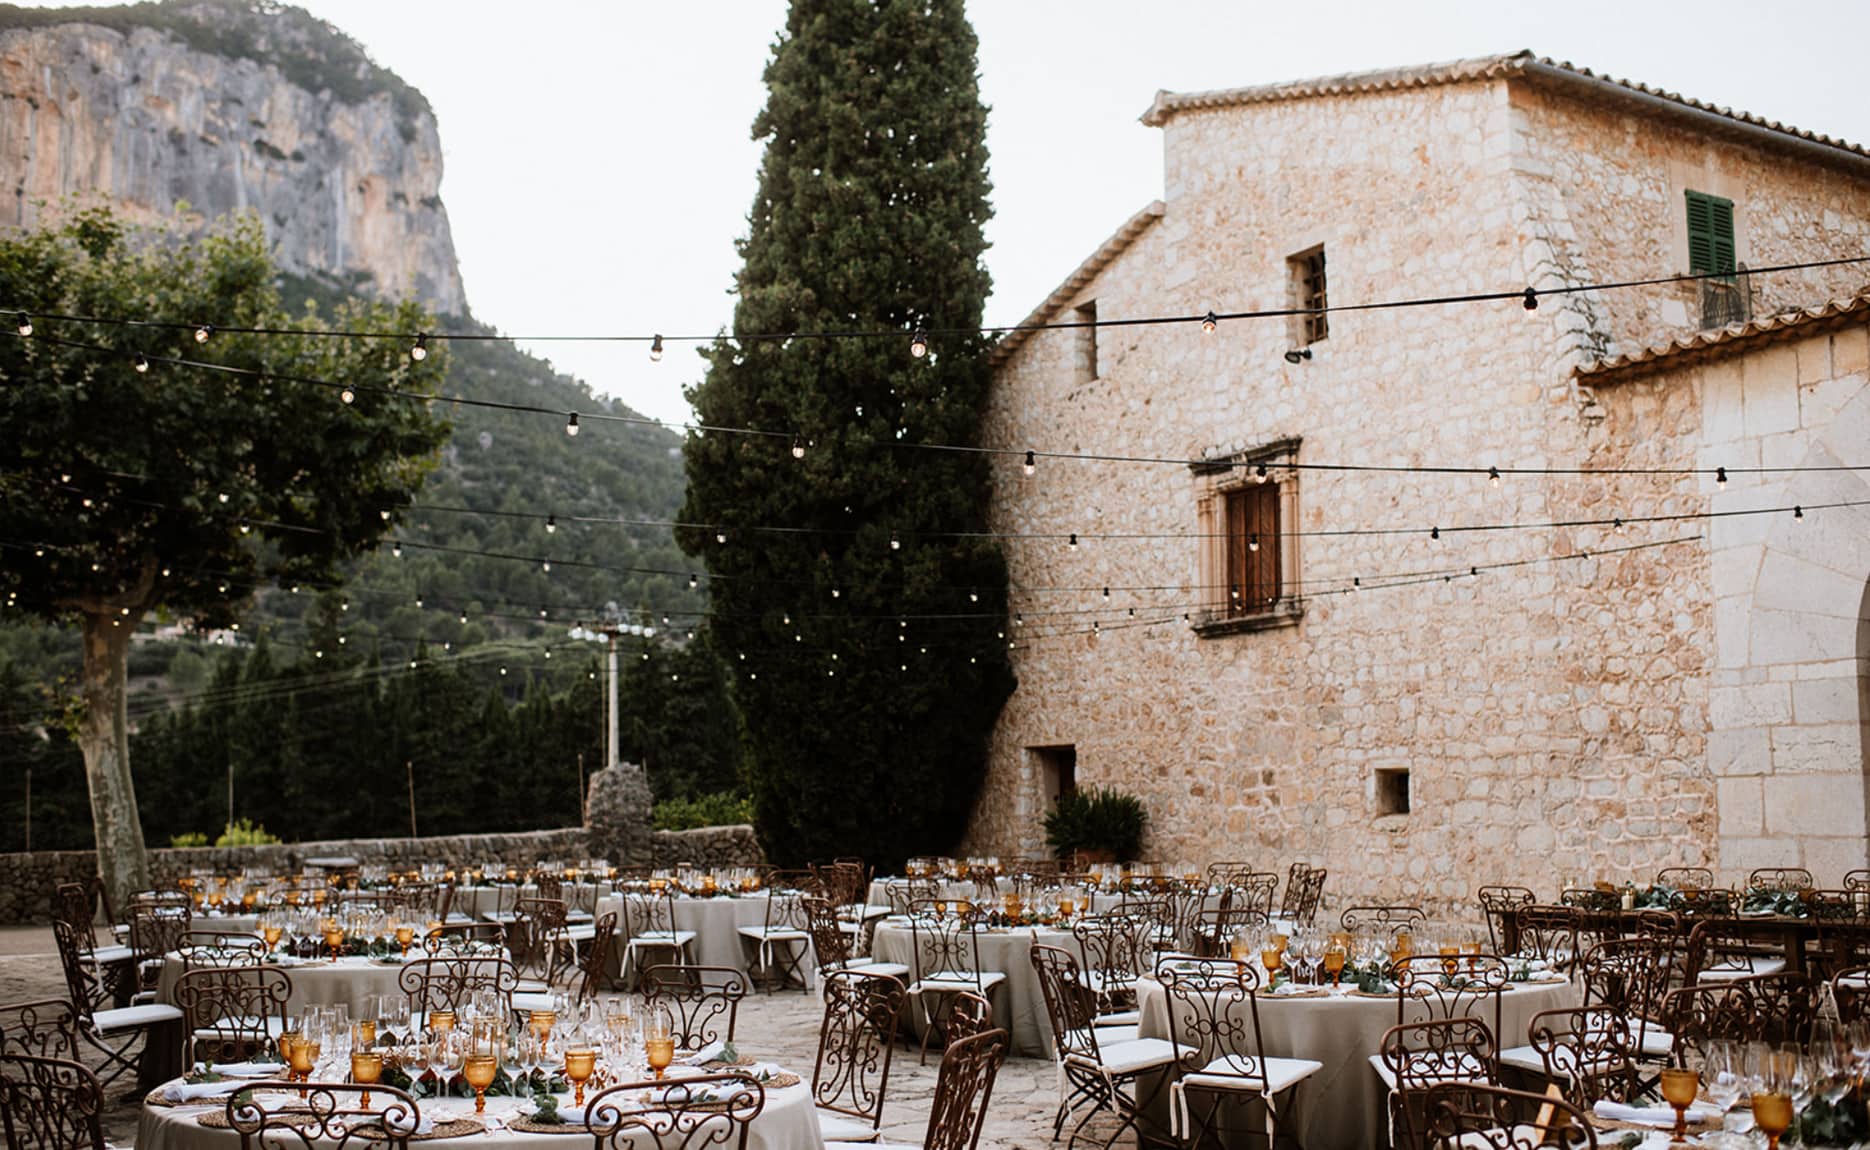 Mesas bellamente dispuestas para una boda al aire libre en Finca Son Berga, Mallorca, con la majestuosa Sierra de Tramuntana de fondo.